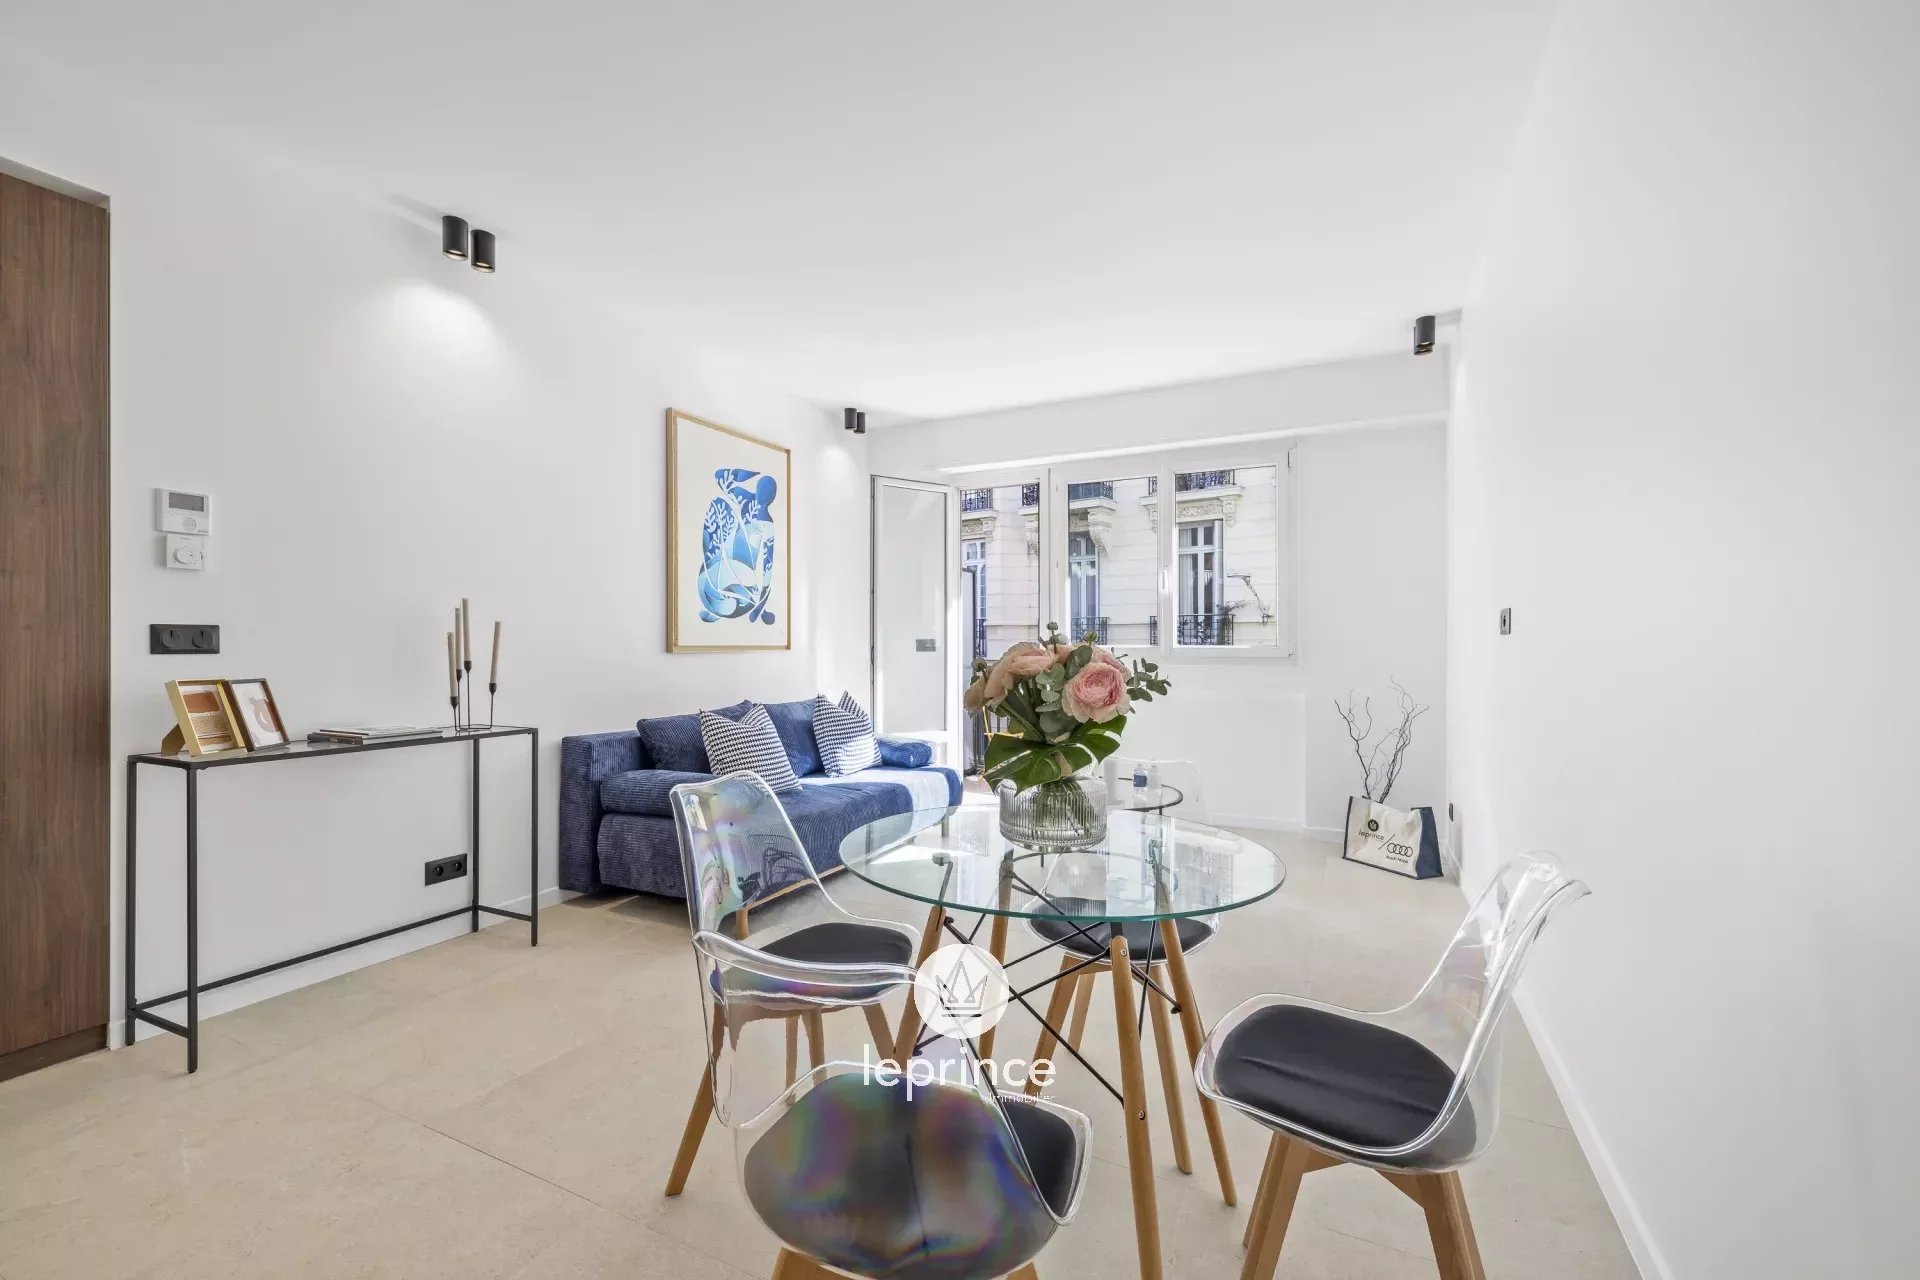 Vente Appartement 58m² 3 Pièces à Nice (06000) - Leprince Immobilier